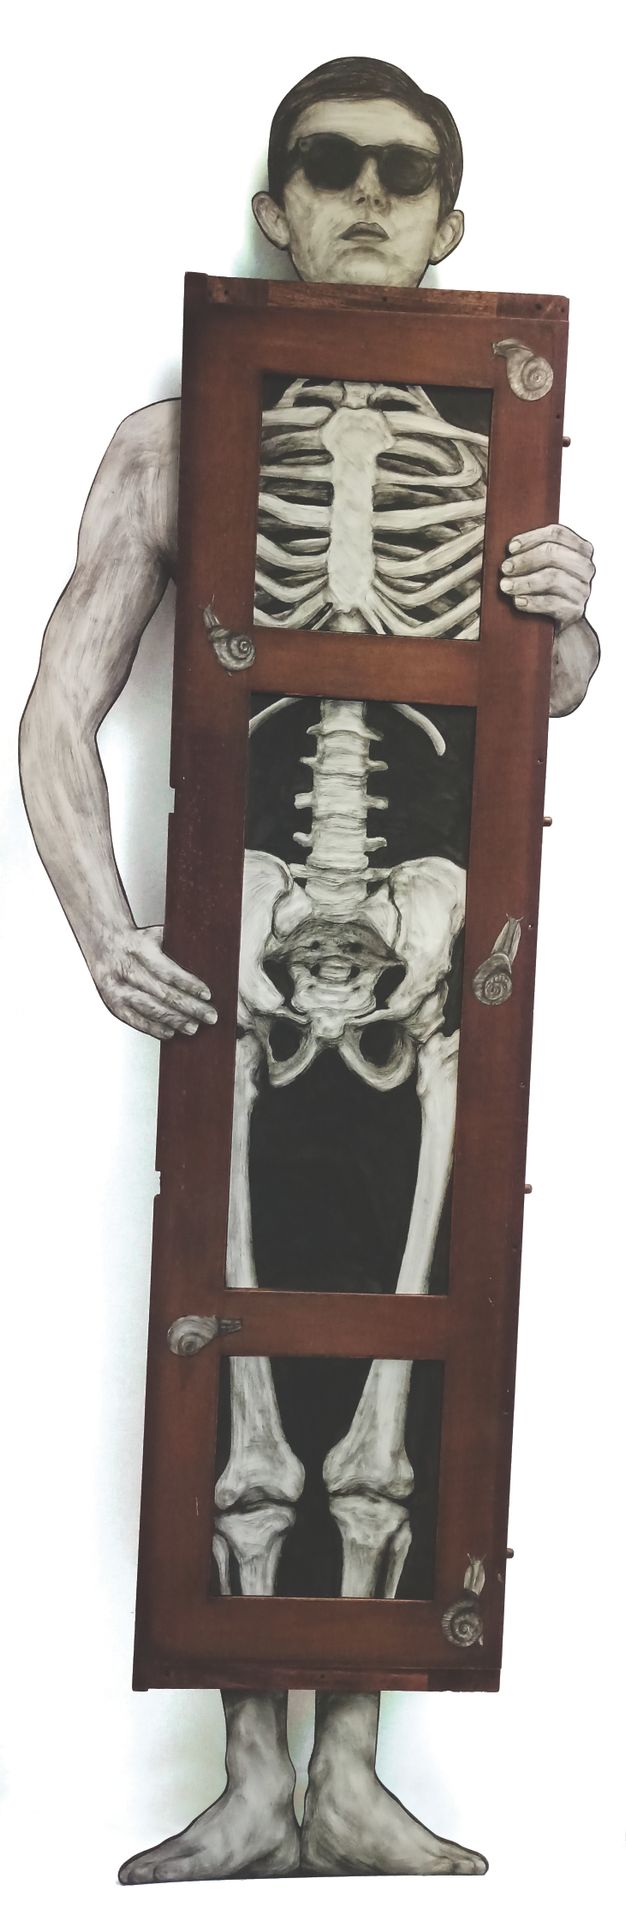 Null LEVALET (1988)

Radiographie

Mischtechnik auf einer lebensgroßen, ausgesch&hellip;